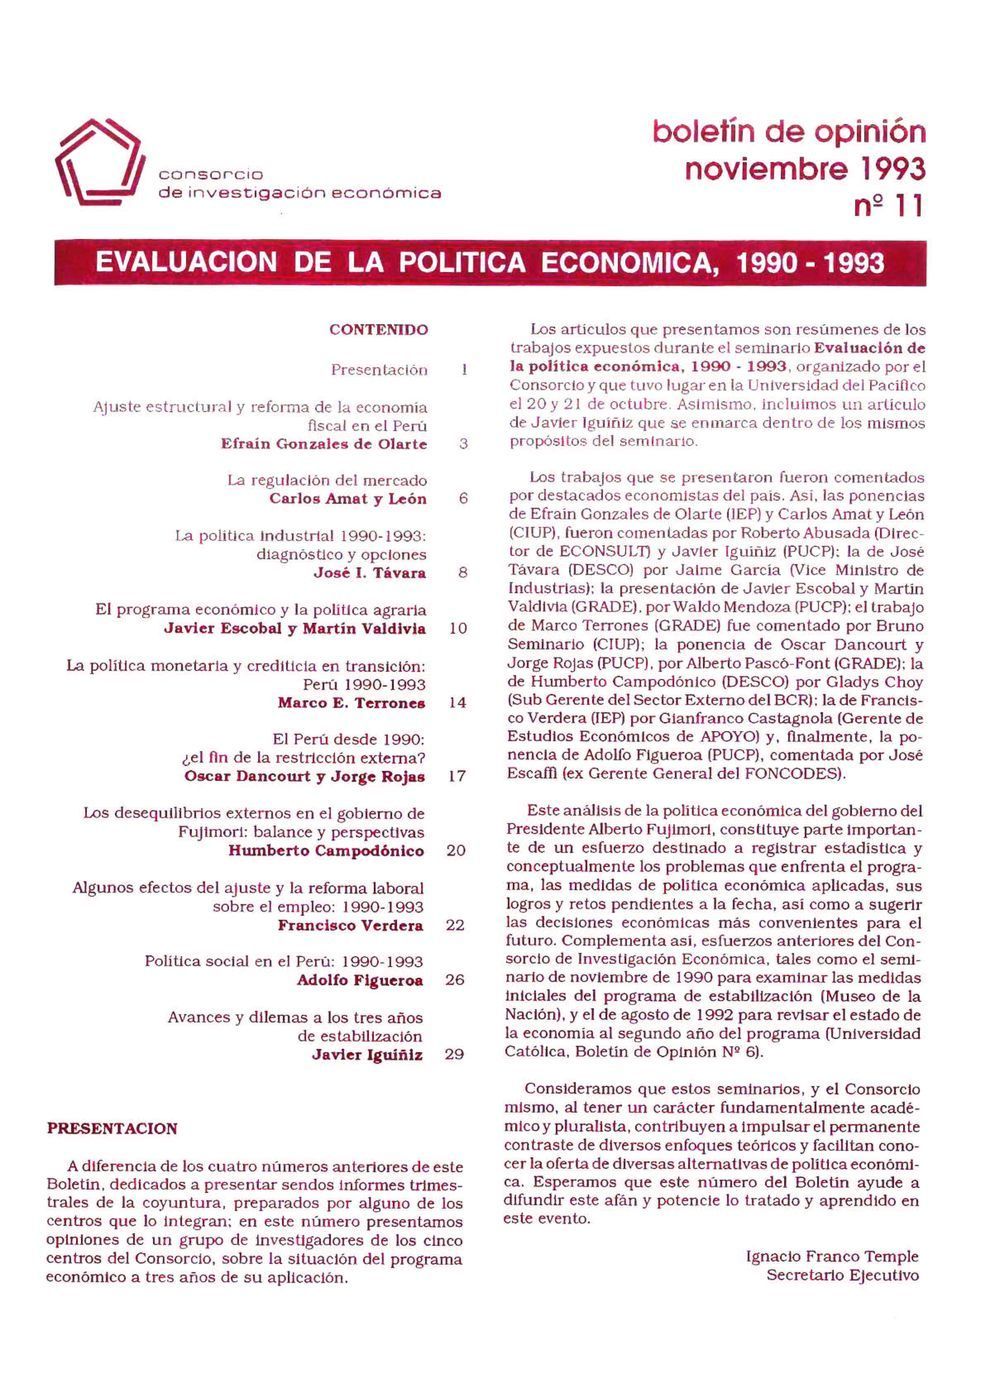 Boletín de opinión: Evaluación de la política económica, 1990-1993 – II Seminario Anual CIES 1993